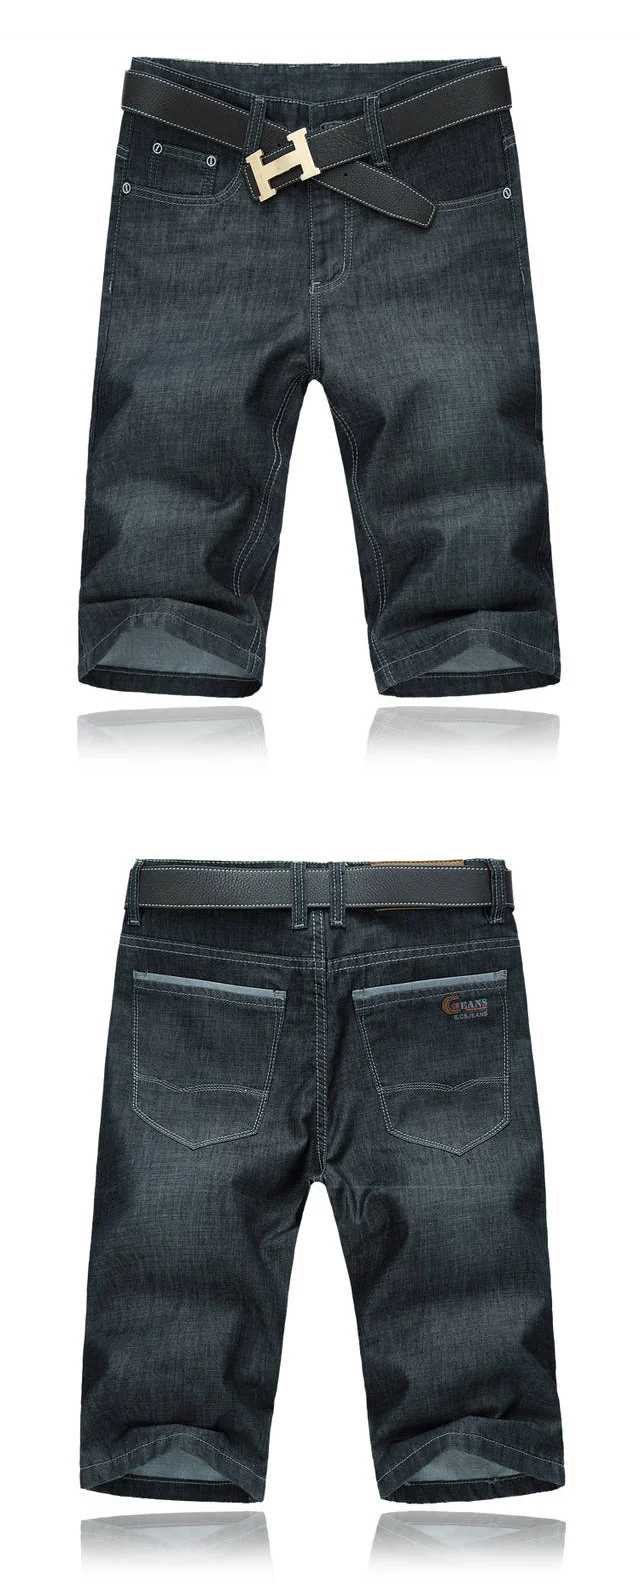 Brother Wang летние мужские повседневные черные джинсовые шорты 2019 новые тонкие прямые эластичные большие размеры брендовые джинсы 30-52